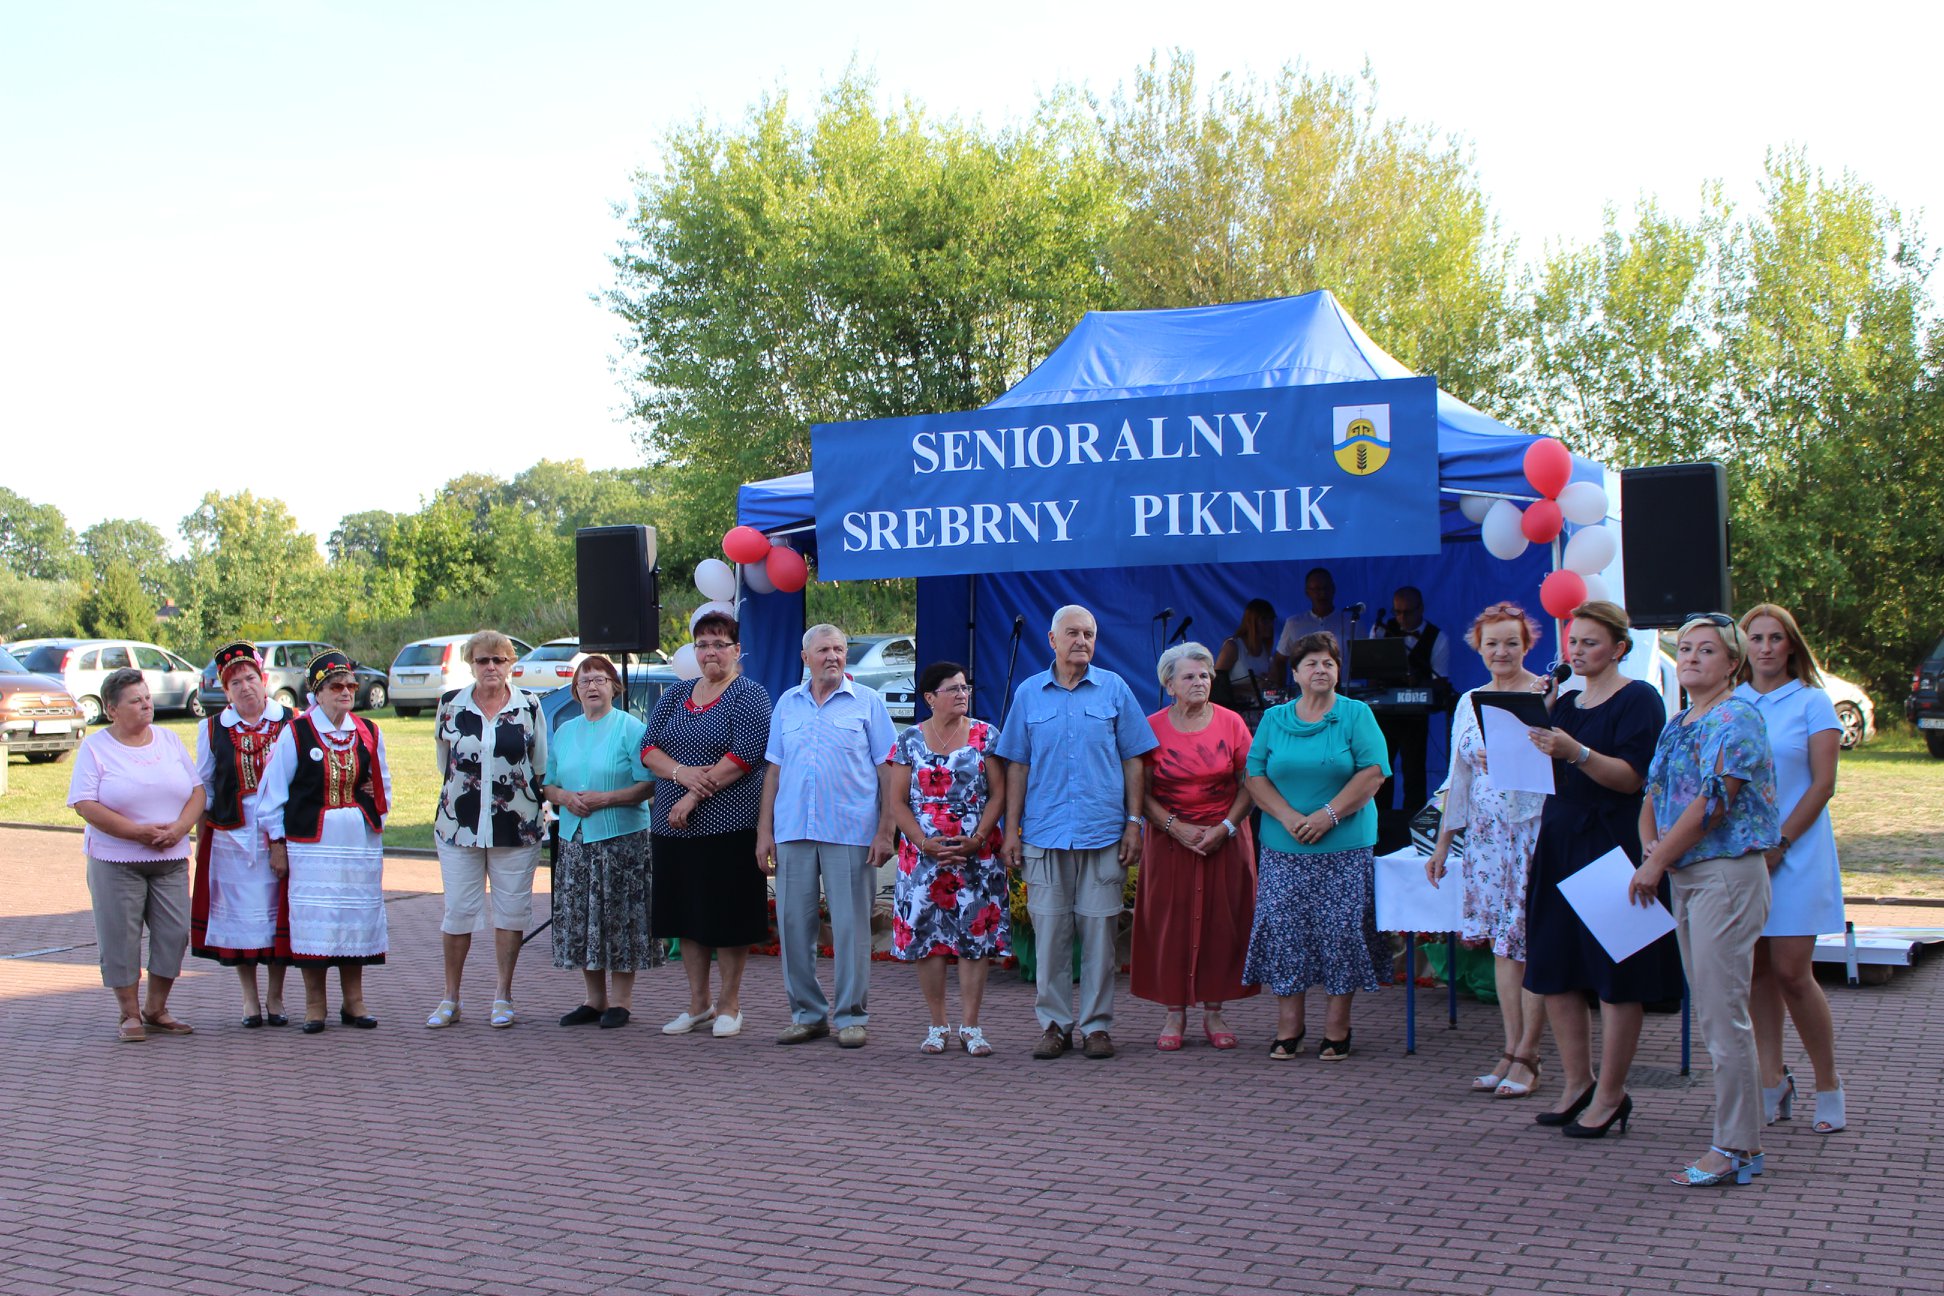 Grupa seniorów zgłoszonych do konkursu "Srebrne Serce" na tle namiotu - sceny Senioralnego Srebrnego Pikniku.